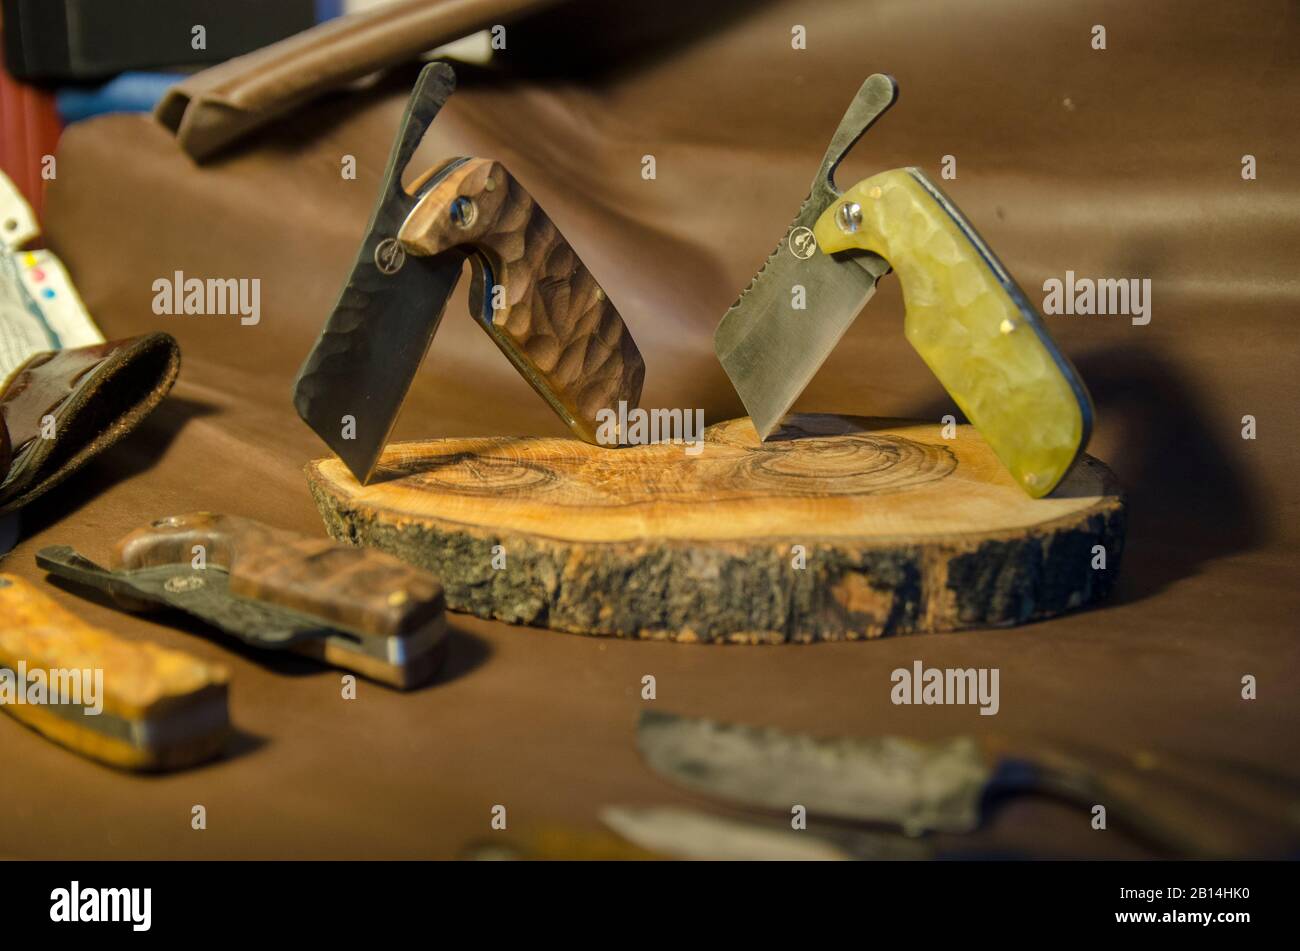 Bushcraft Knife 1 Stock Photo